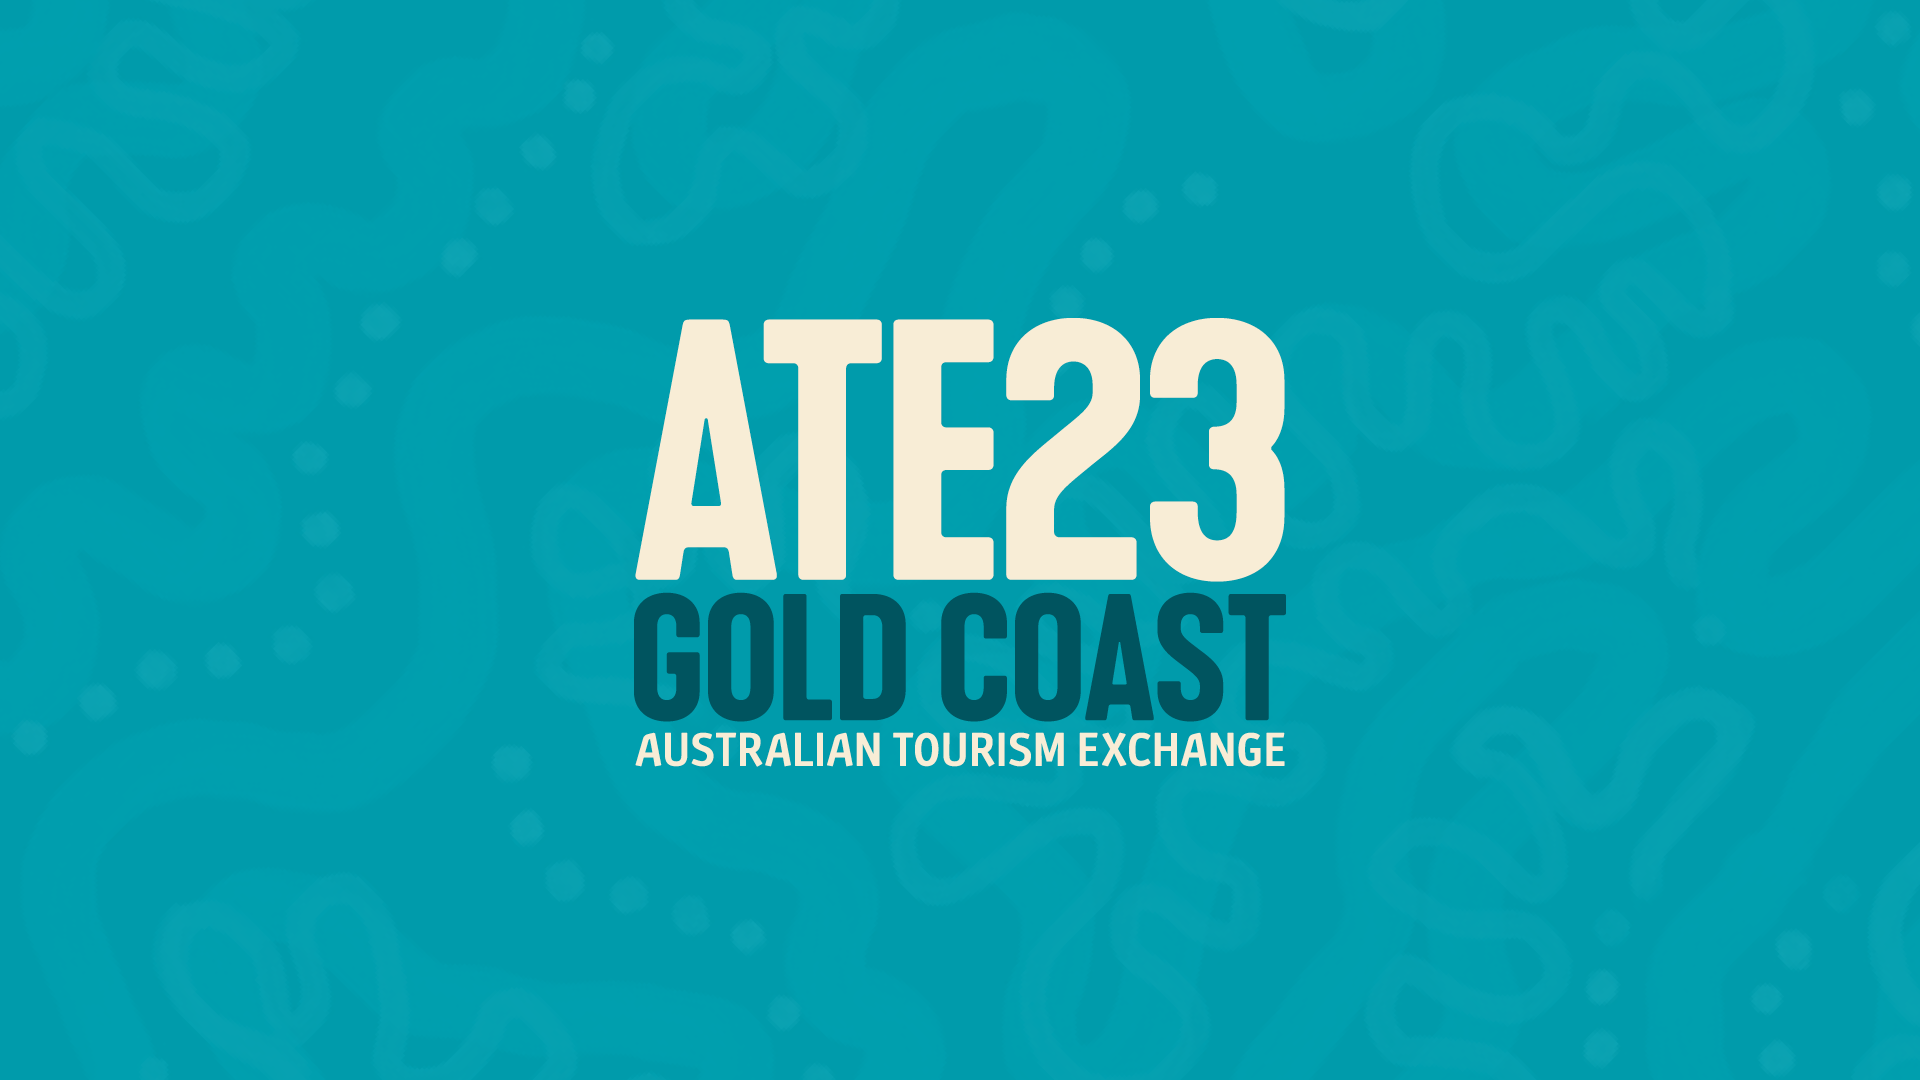 tourism australia ate23